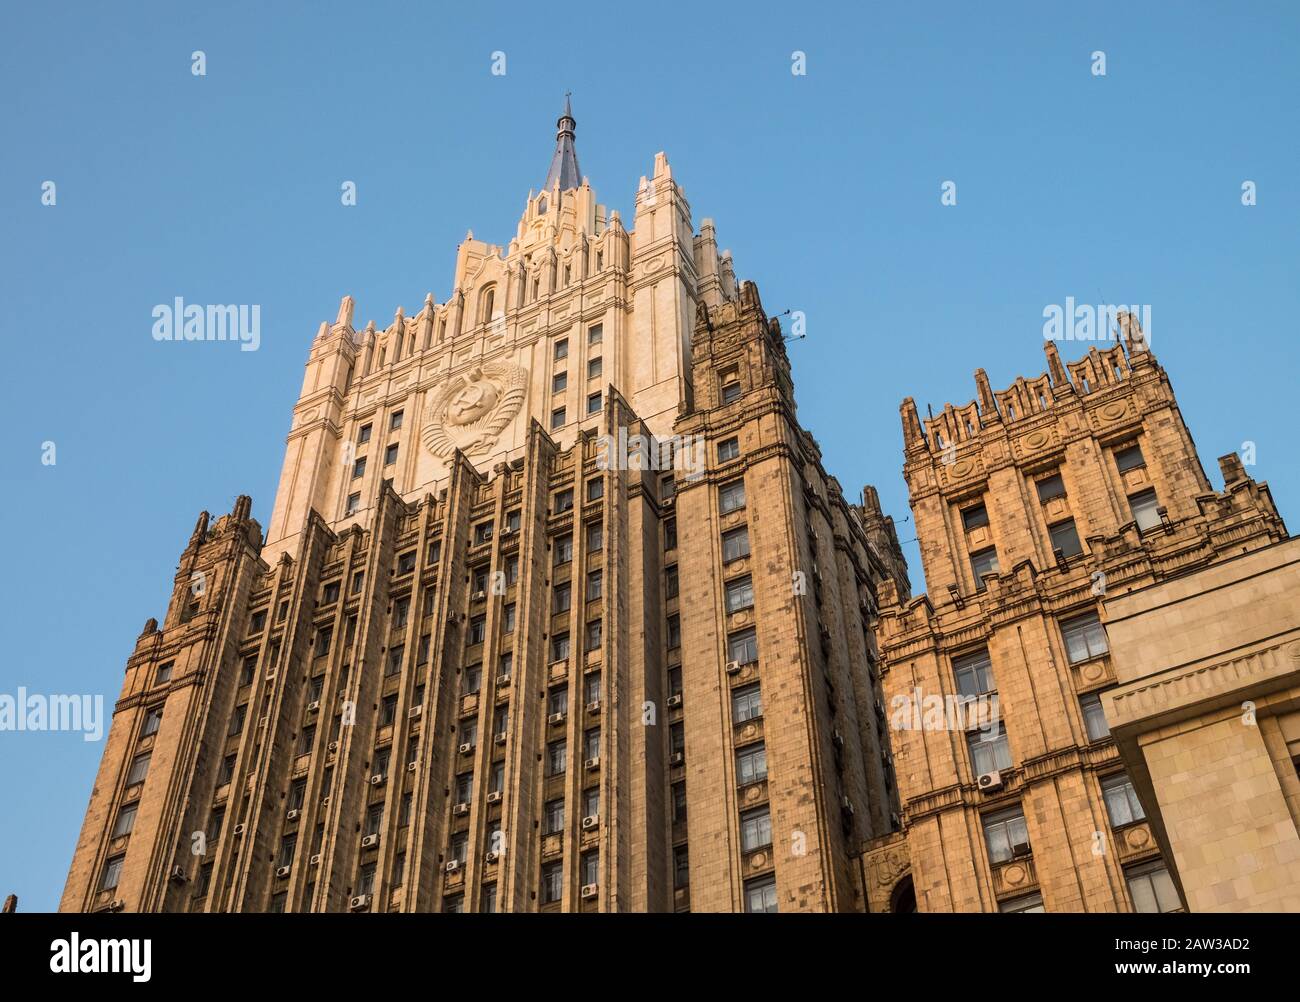 Fachada exterior del edificio principal del Ministerio de Relaciones Exteriores de Rusia, Smolenskaya-Sennaya pl, Moscú, Rusia Foto de stock